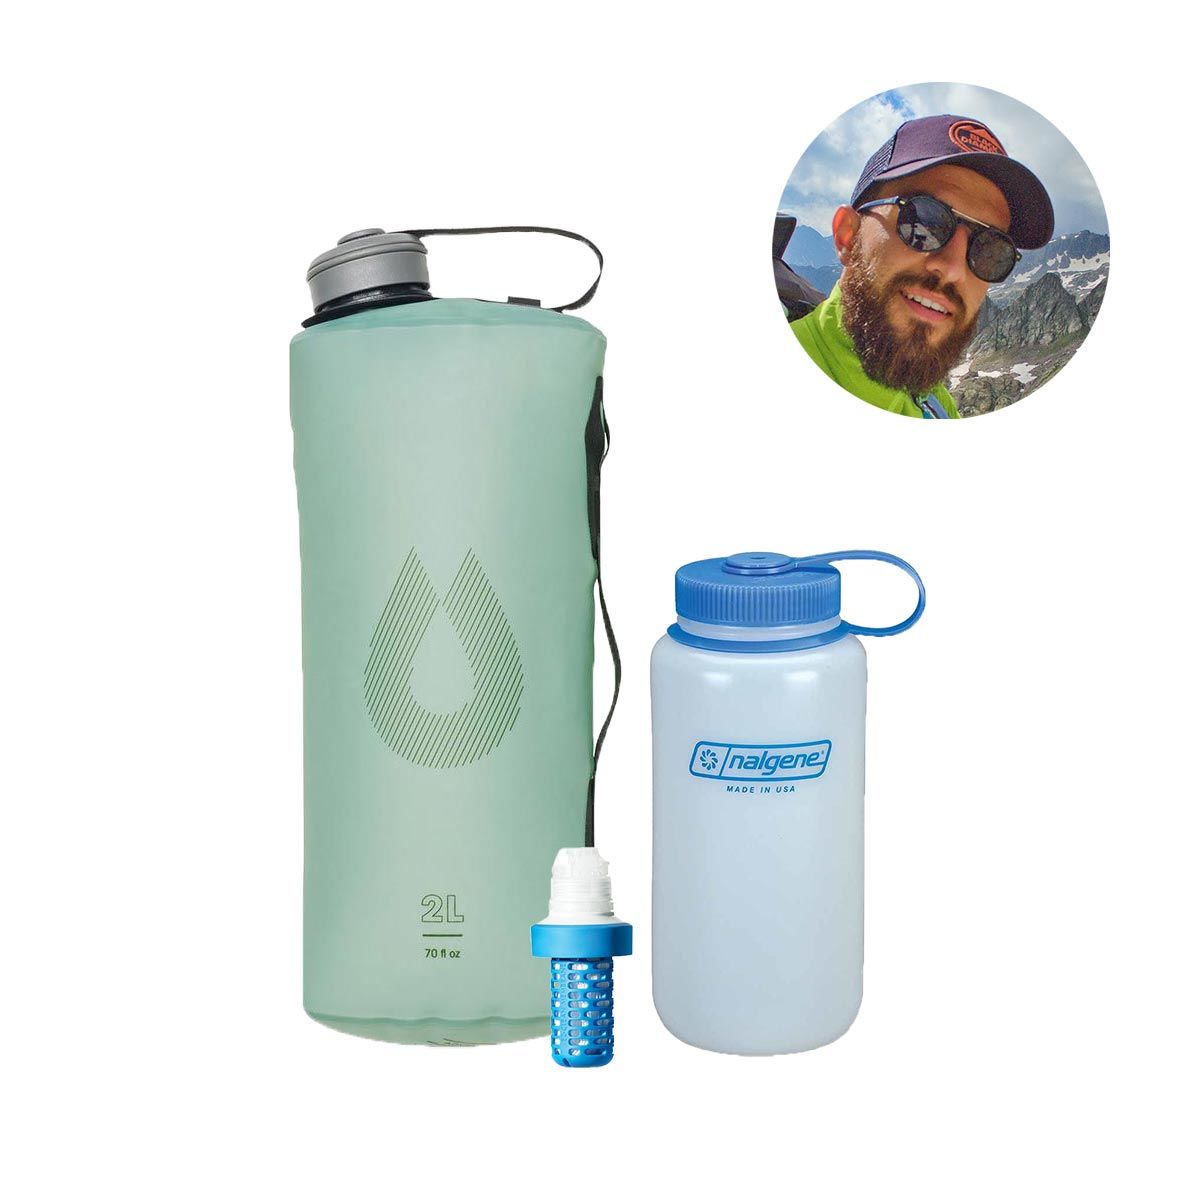 Flasque Hydrapak UltraFlask Speed 600 ml : gourde souple trail, ultratrail  et running